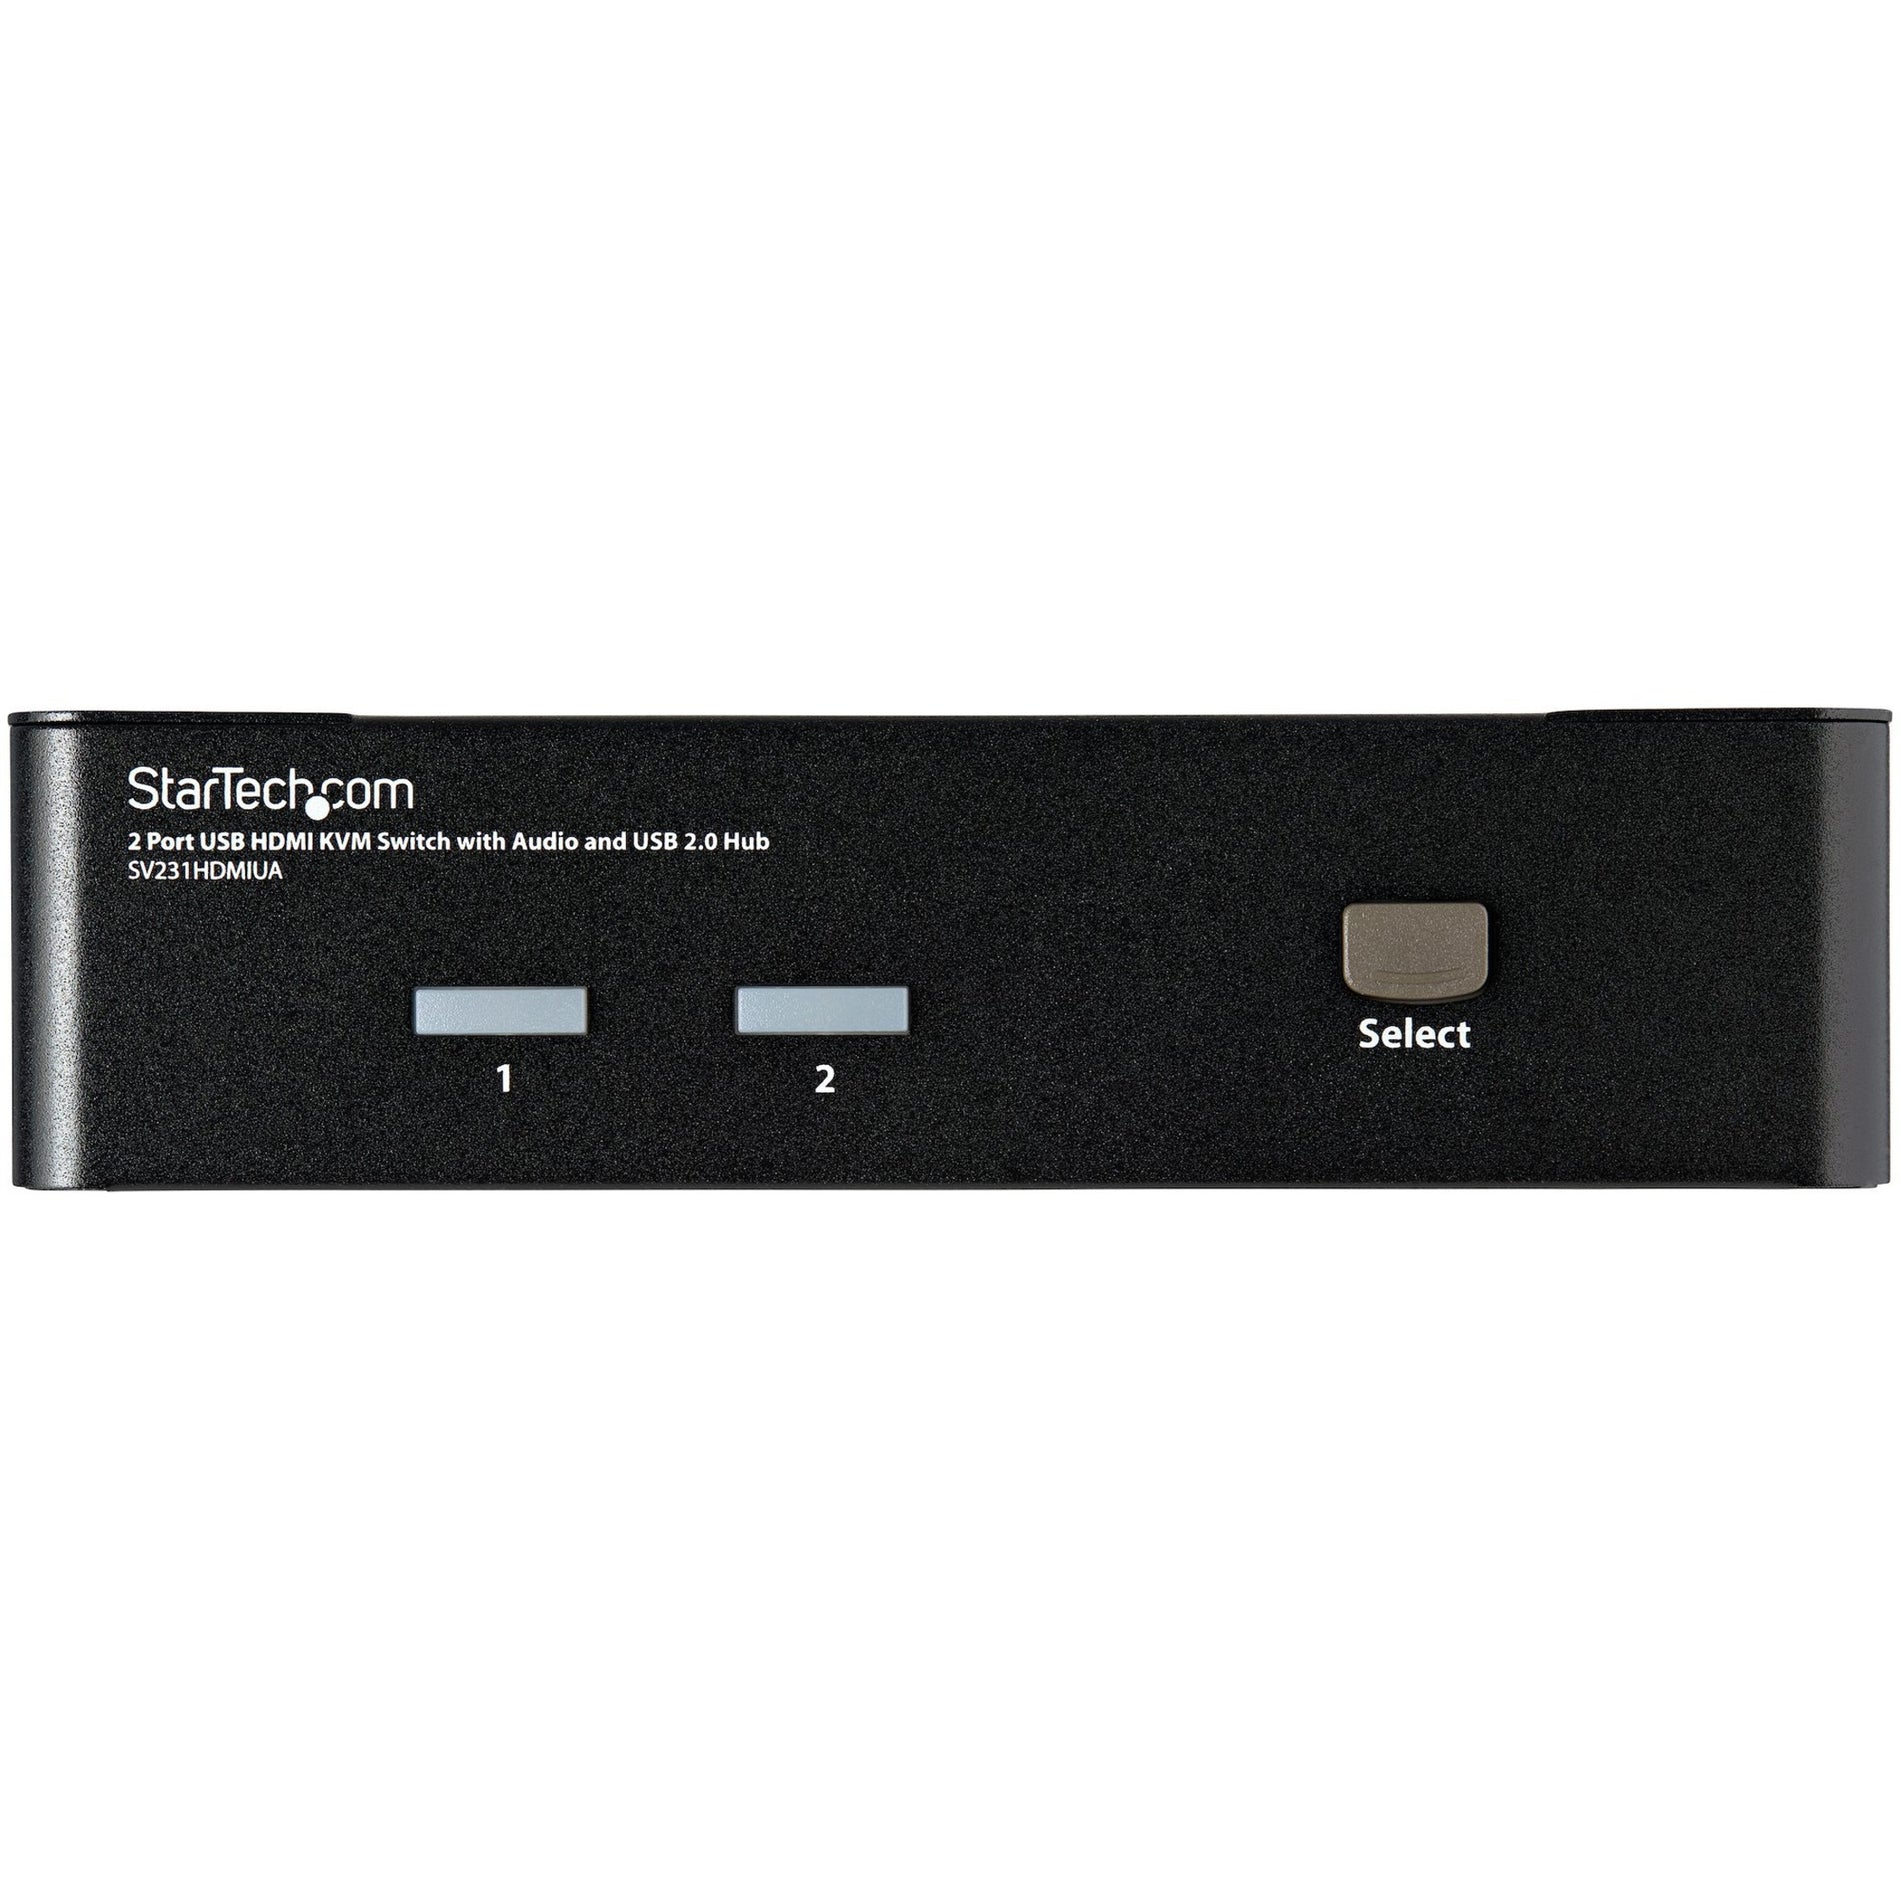 星特科技SV231HDMIUA 2端口USB HDMI KVM切换器与音频和USB 2.0集线器，共享外设和显示器，游戏机和PC之间 品牌名称：星特科技